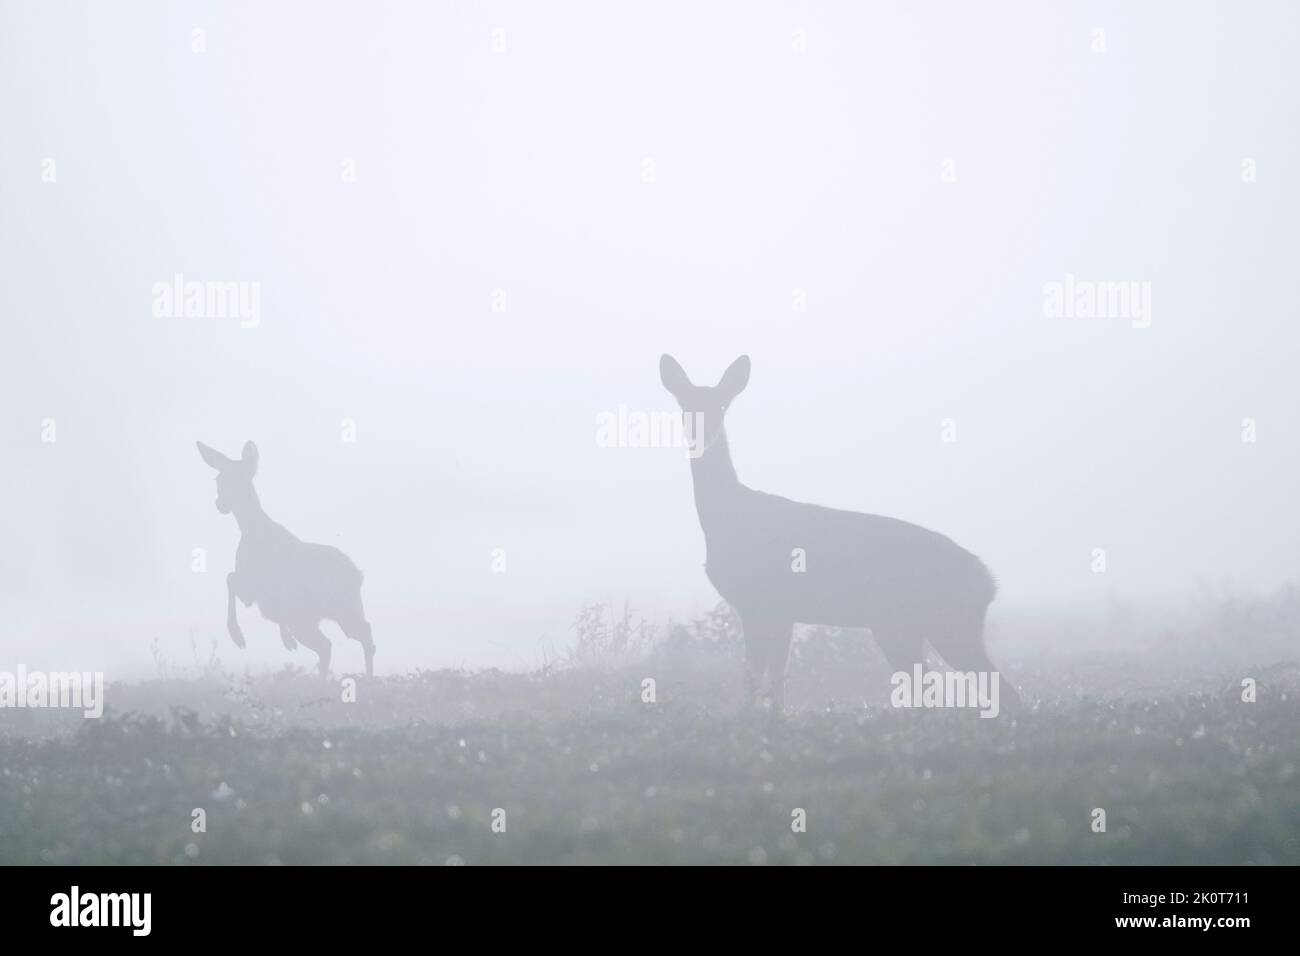 Corzo europeo (Capreolus capreolus) hembra / ciervo con jóvenes huyendo en prado / pradera cubierta de densa niebla a finales de verano / principios de otoño Foto de stock